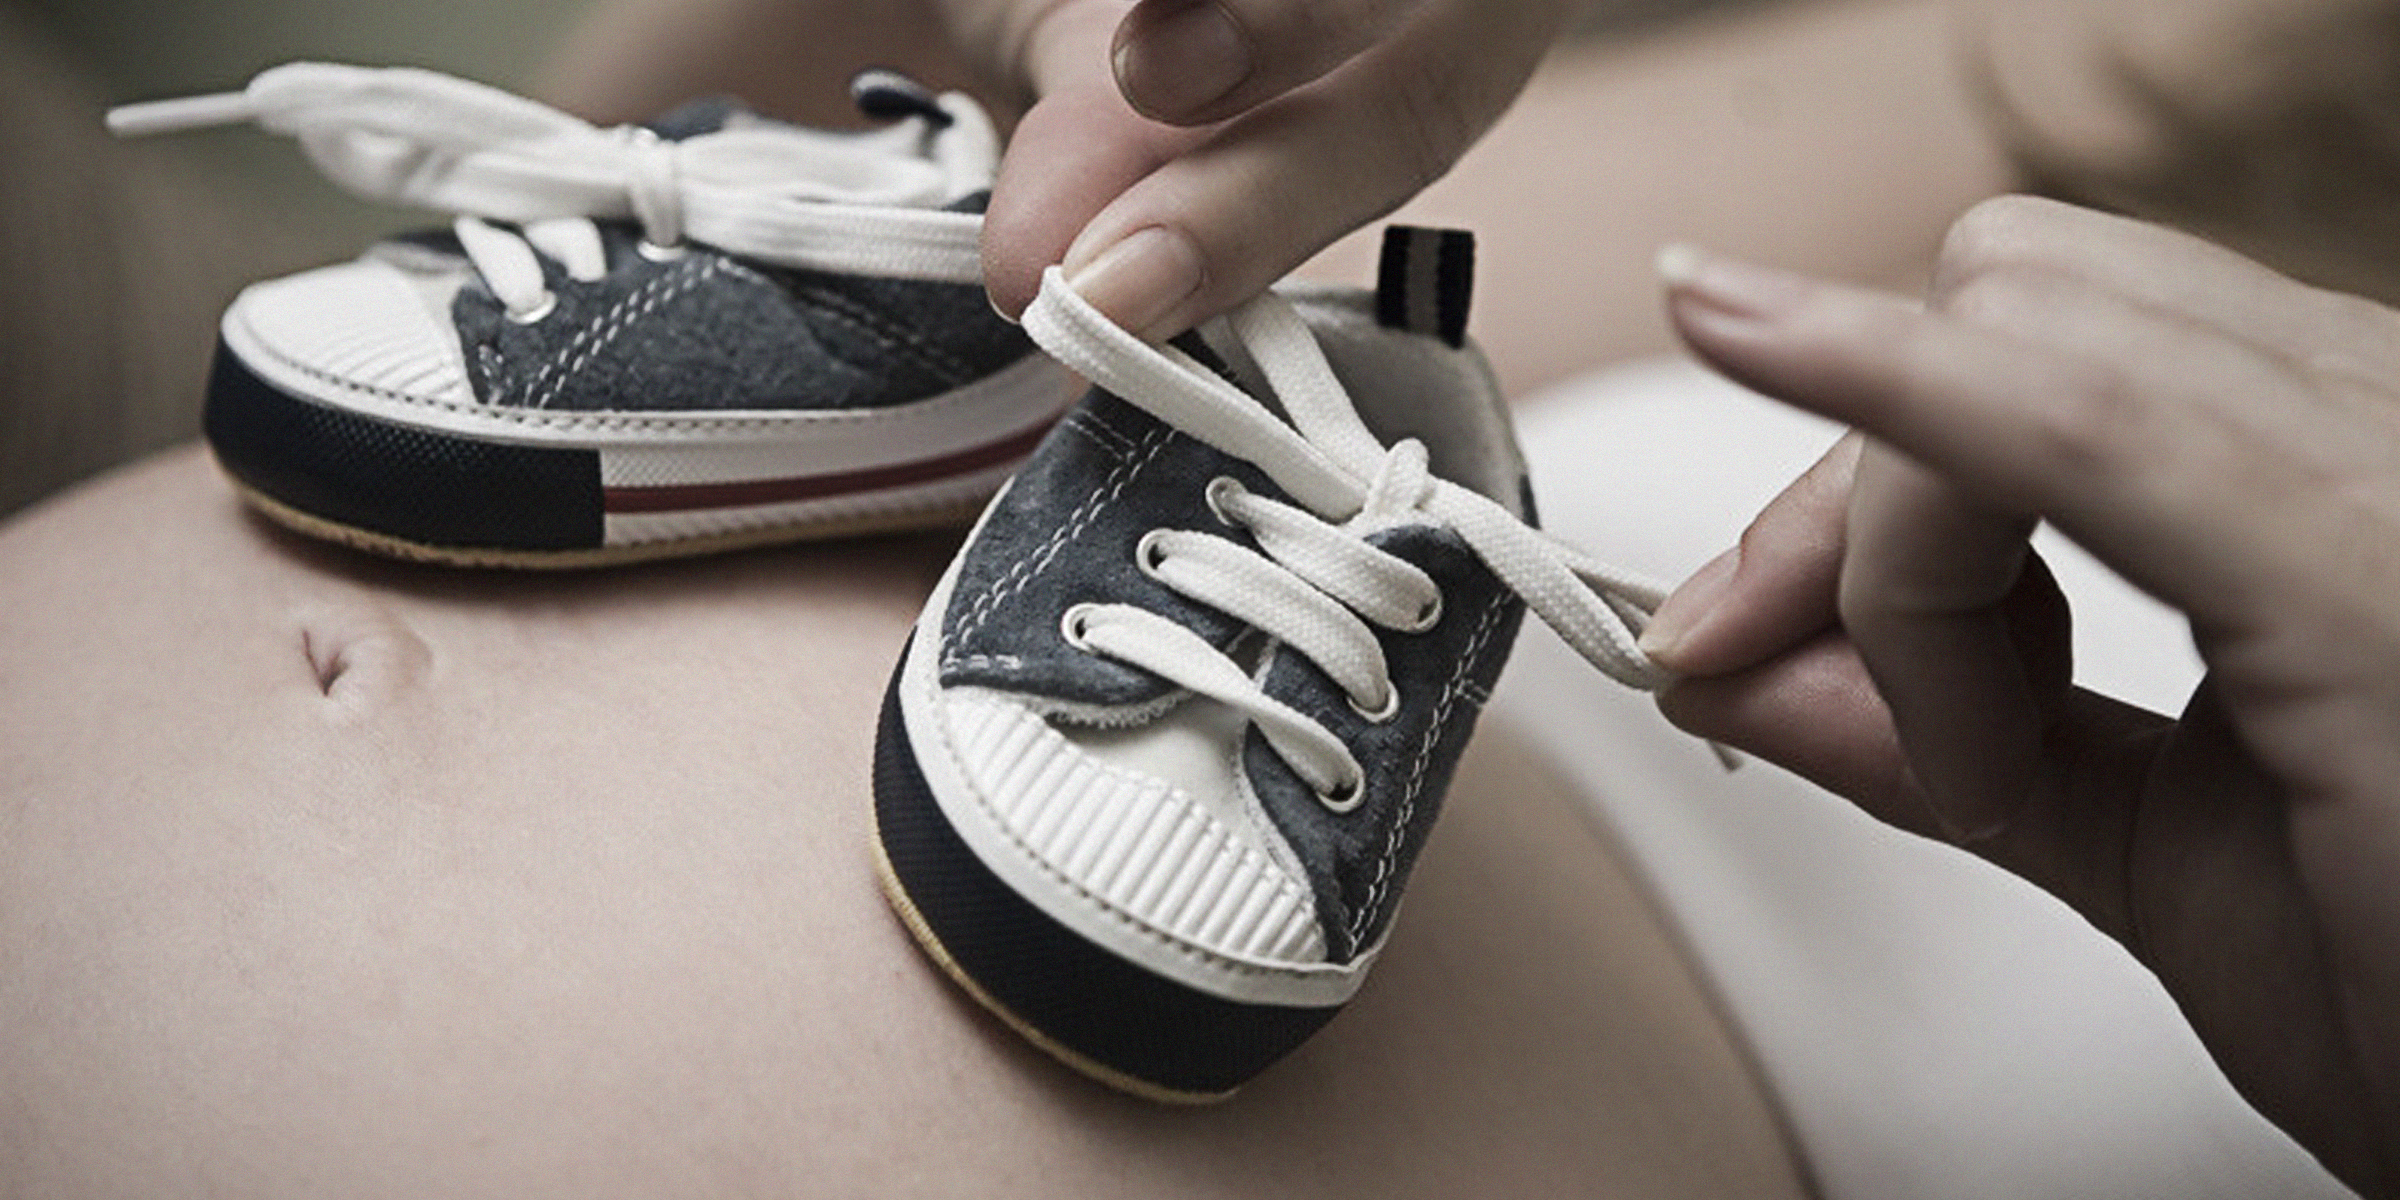 Chaussures de bébé posées sur le ventre d'une femme enceinte | Source : flickr.com/Ⅿeagan/CC BY 2.0